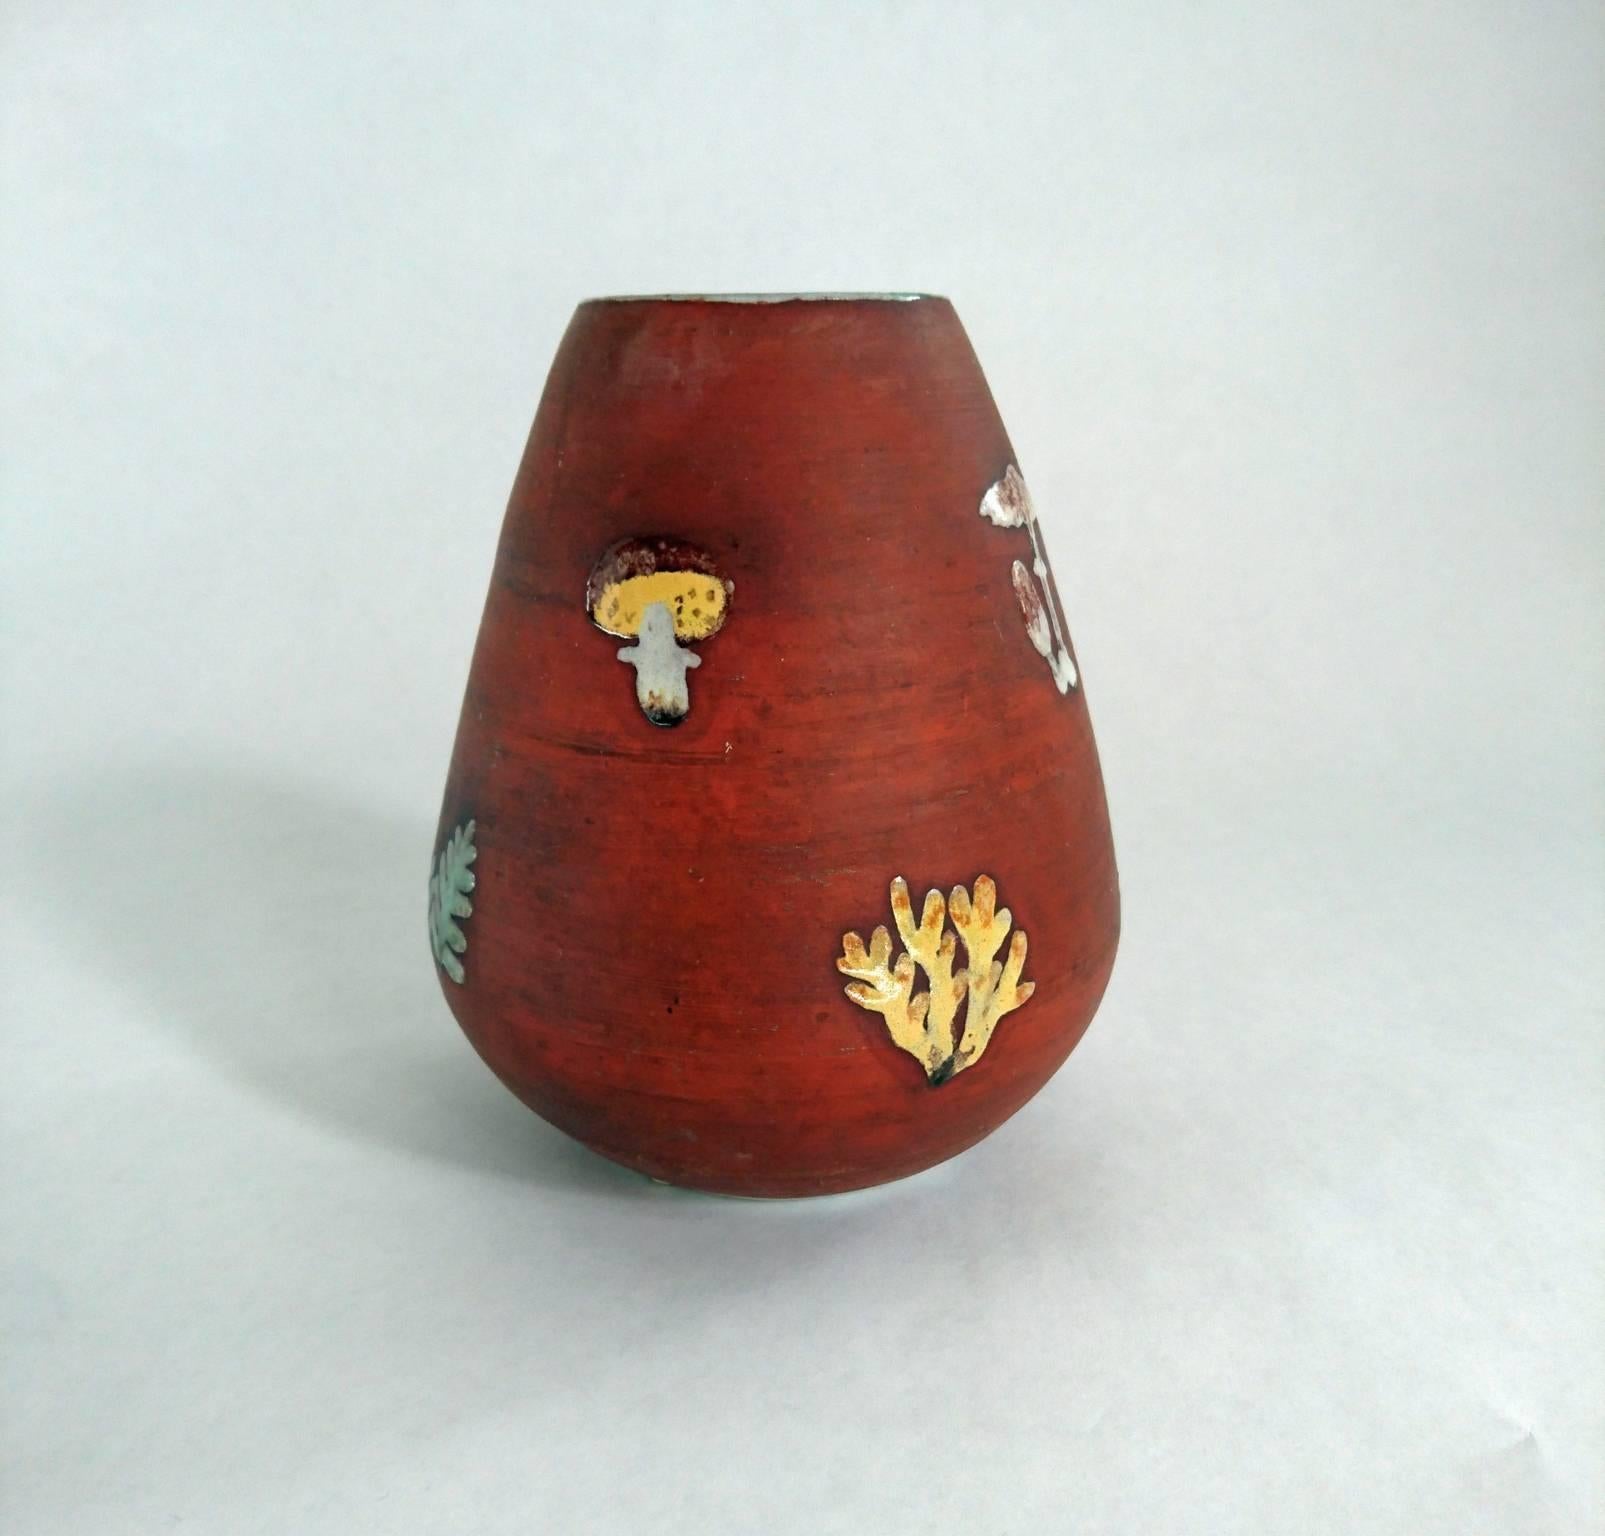 Seltene Studio-Vase mit unglasierter Oberfläche, verziert mit verschiedenen Pilzen und Farnen. Der Rand der Vase sowie der Boden sind ebenfalls glasiert. Dem österreichischen Designer Walter Bosse nicht zuzuordnen. Sie stammt eindeutig aus der Mitte